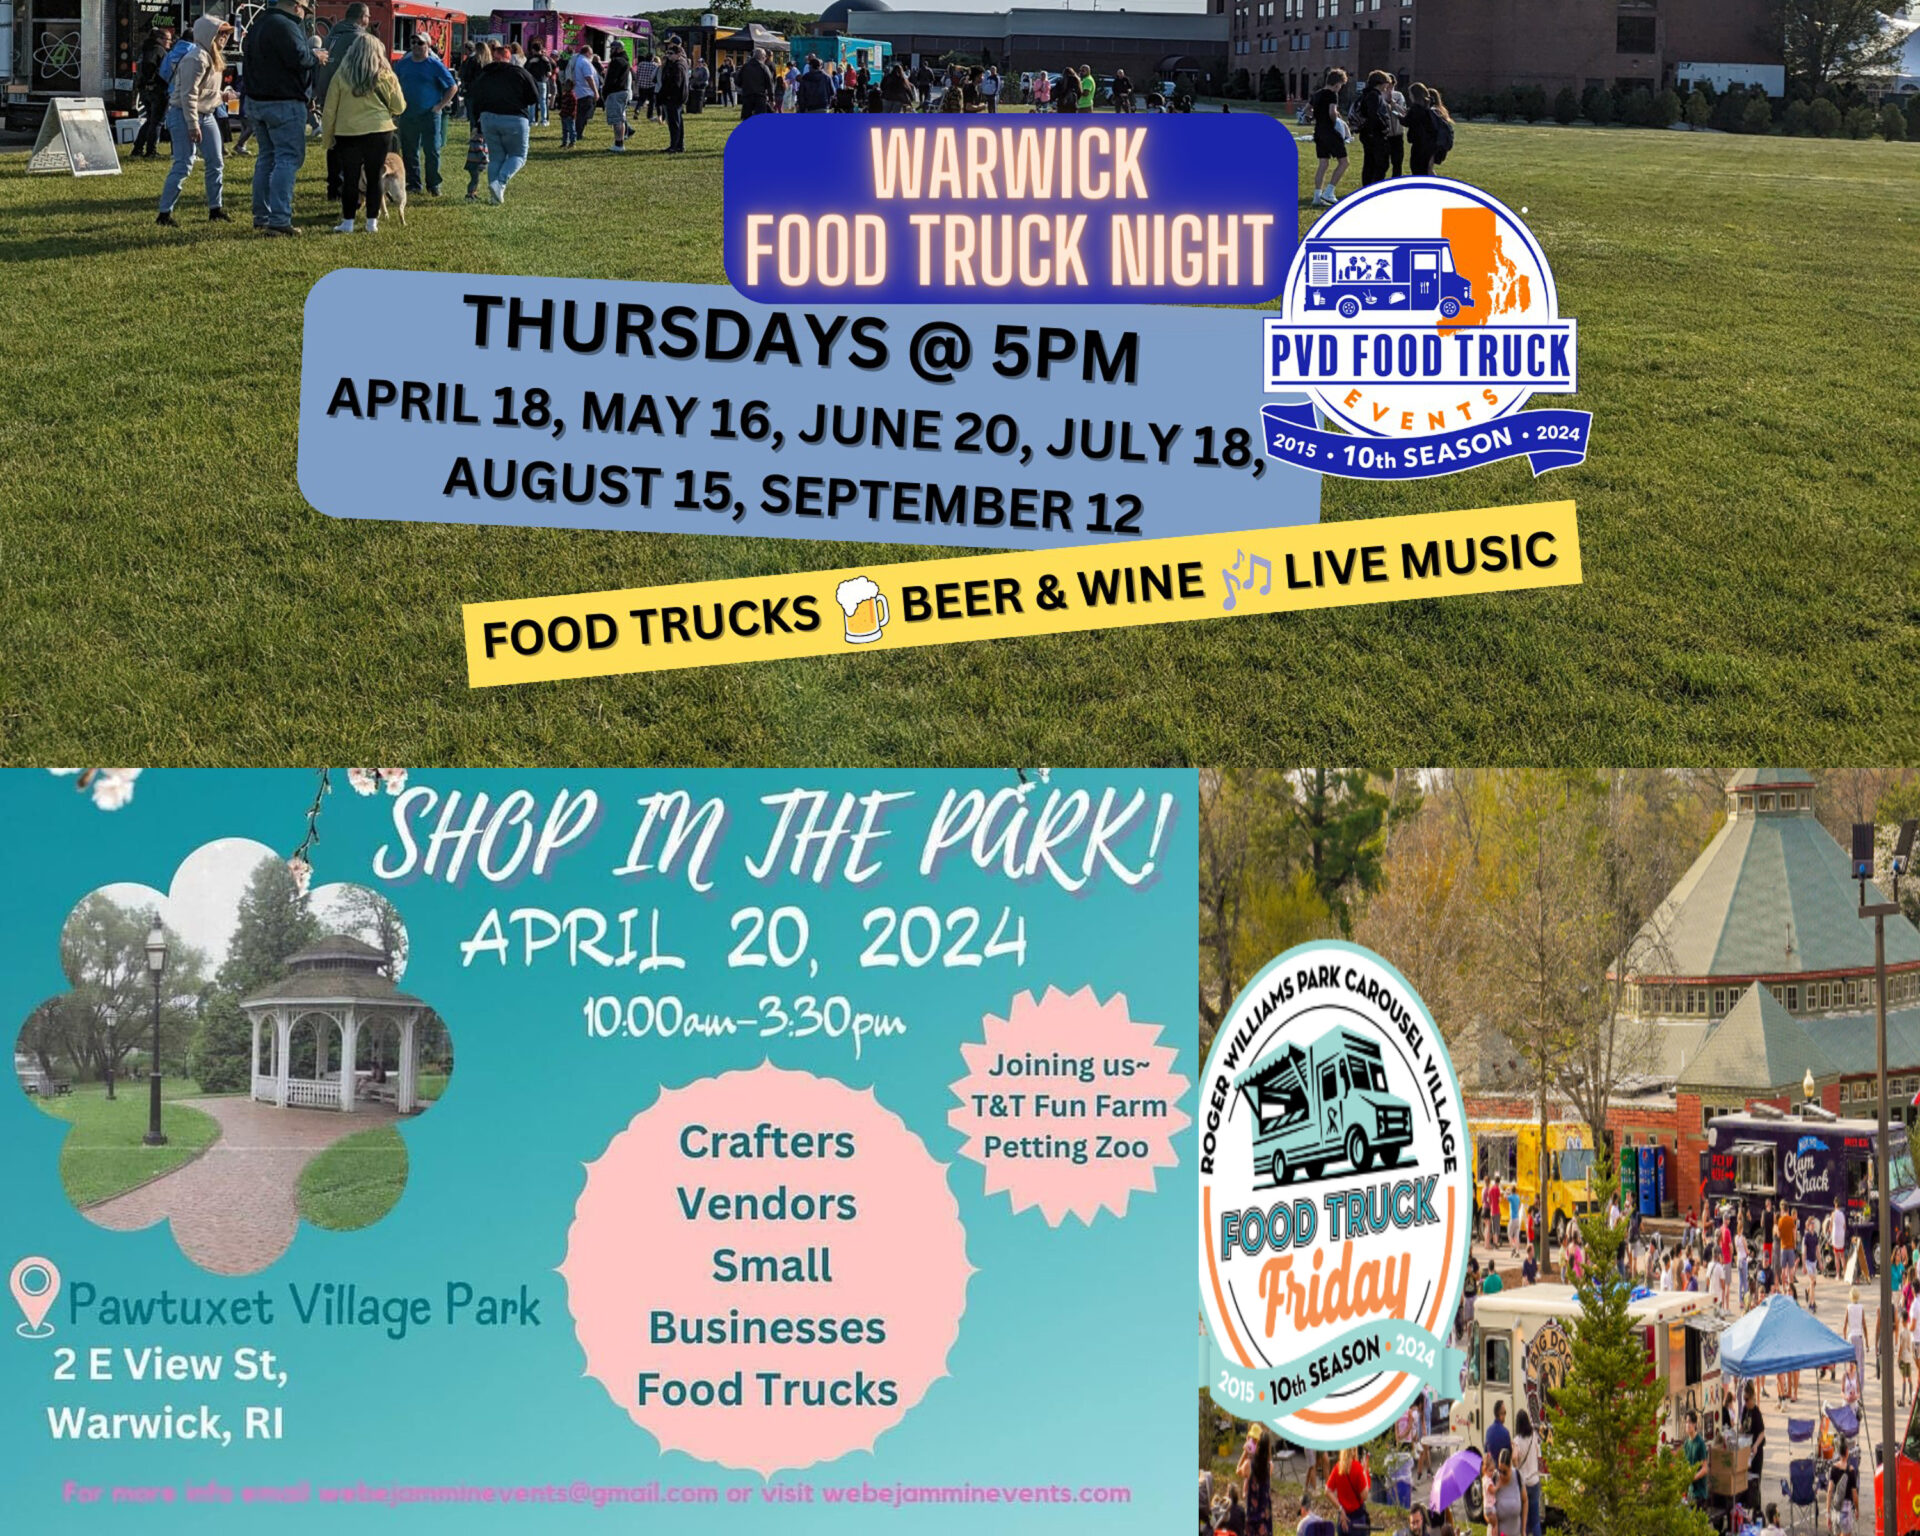 Warwick Weekend Events: Food Trucks Return, Saturday Festival